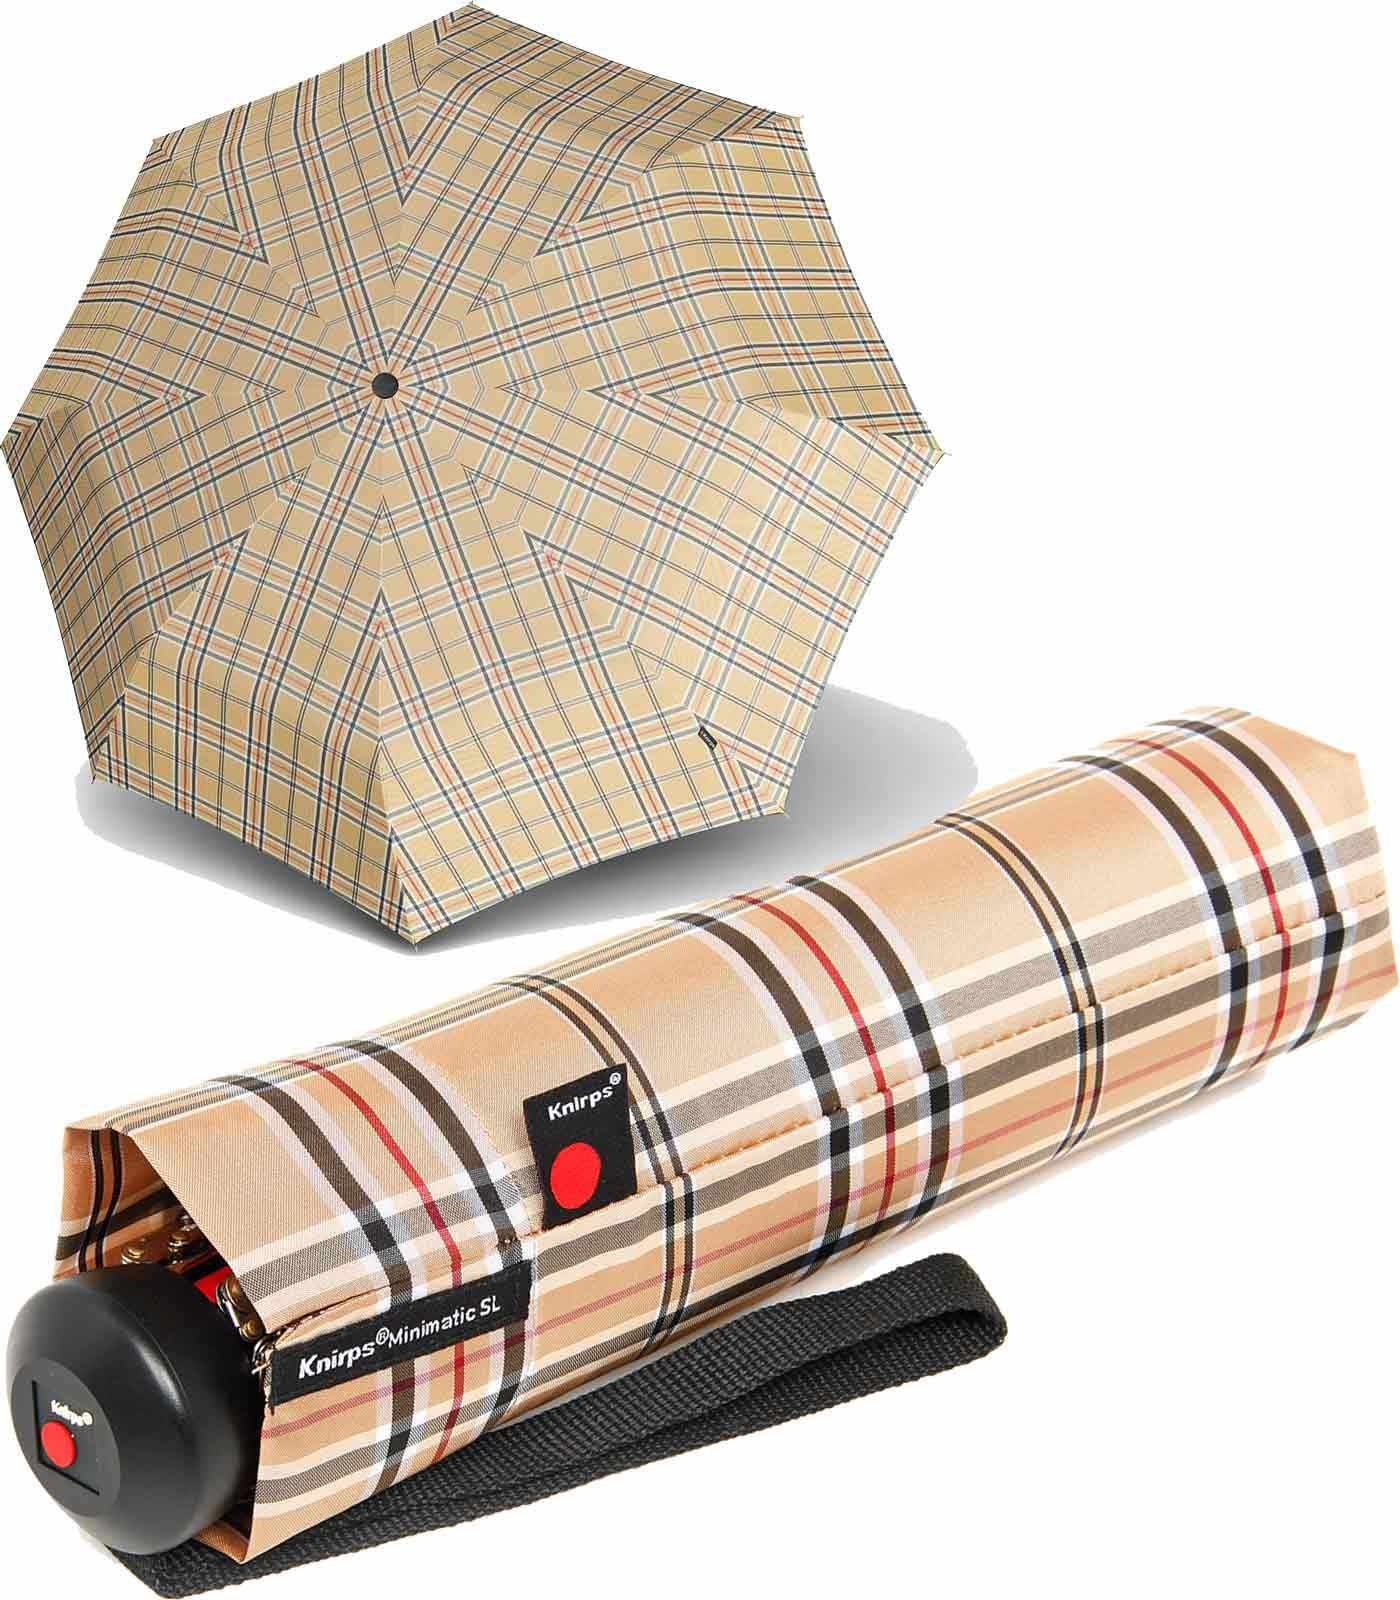 Knirps® Taschenregenschirm stabiler Herrenschirm mit Auf-Automatik,  klassisch-edel mit Karo-Muster, Maße: Regenschirm geöffnet 97 cm, Schirm  geschlossen 28 cm groß